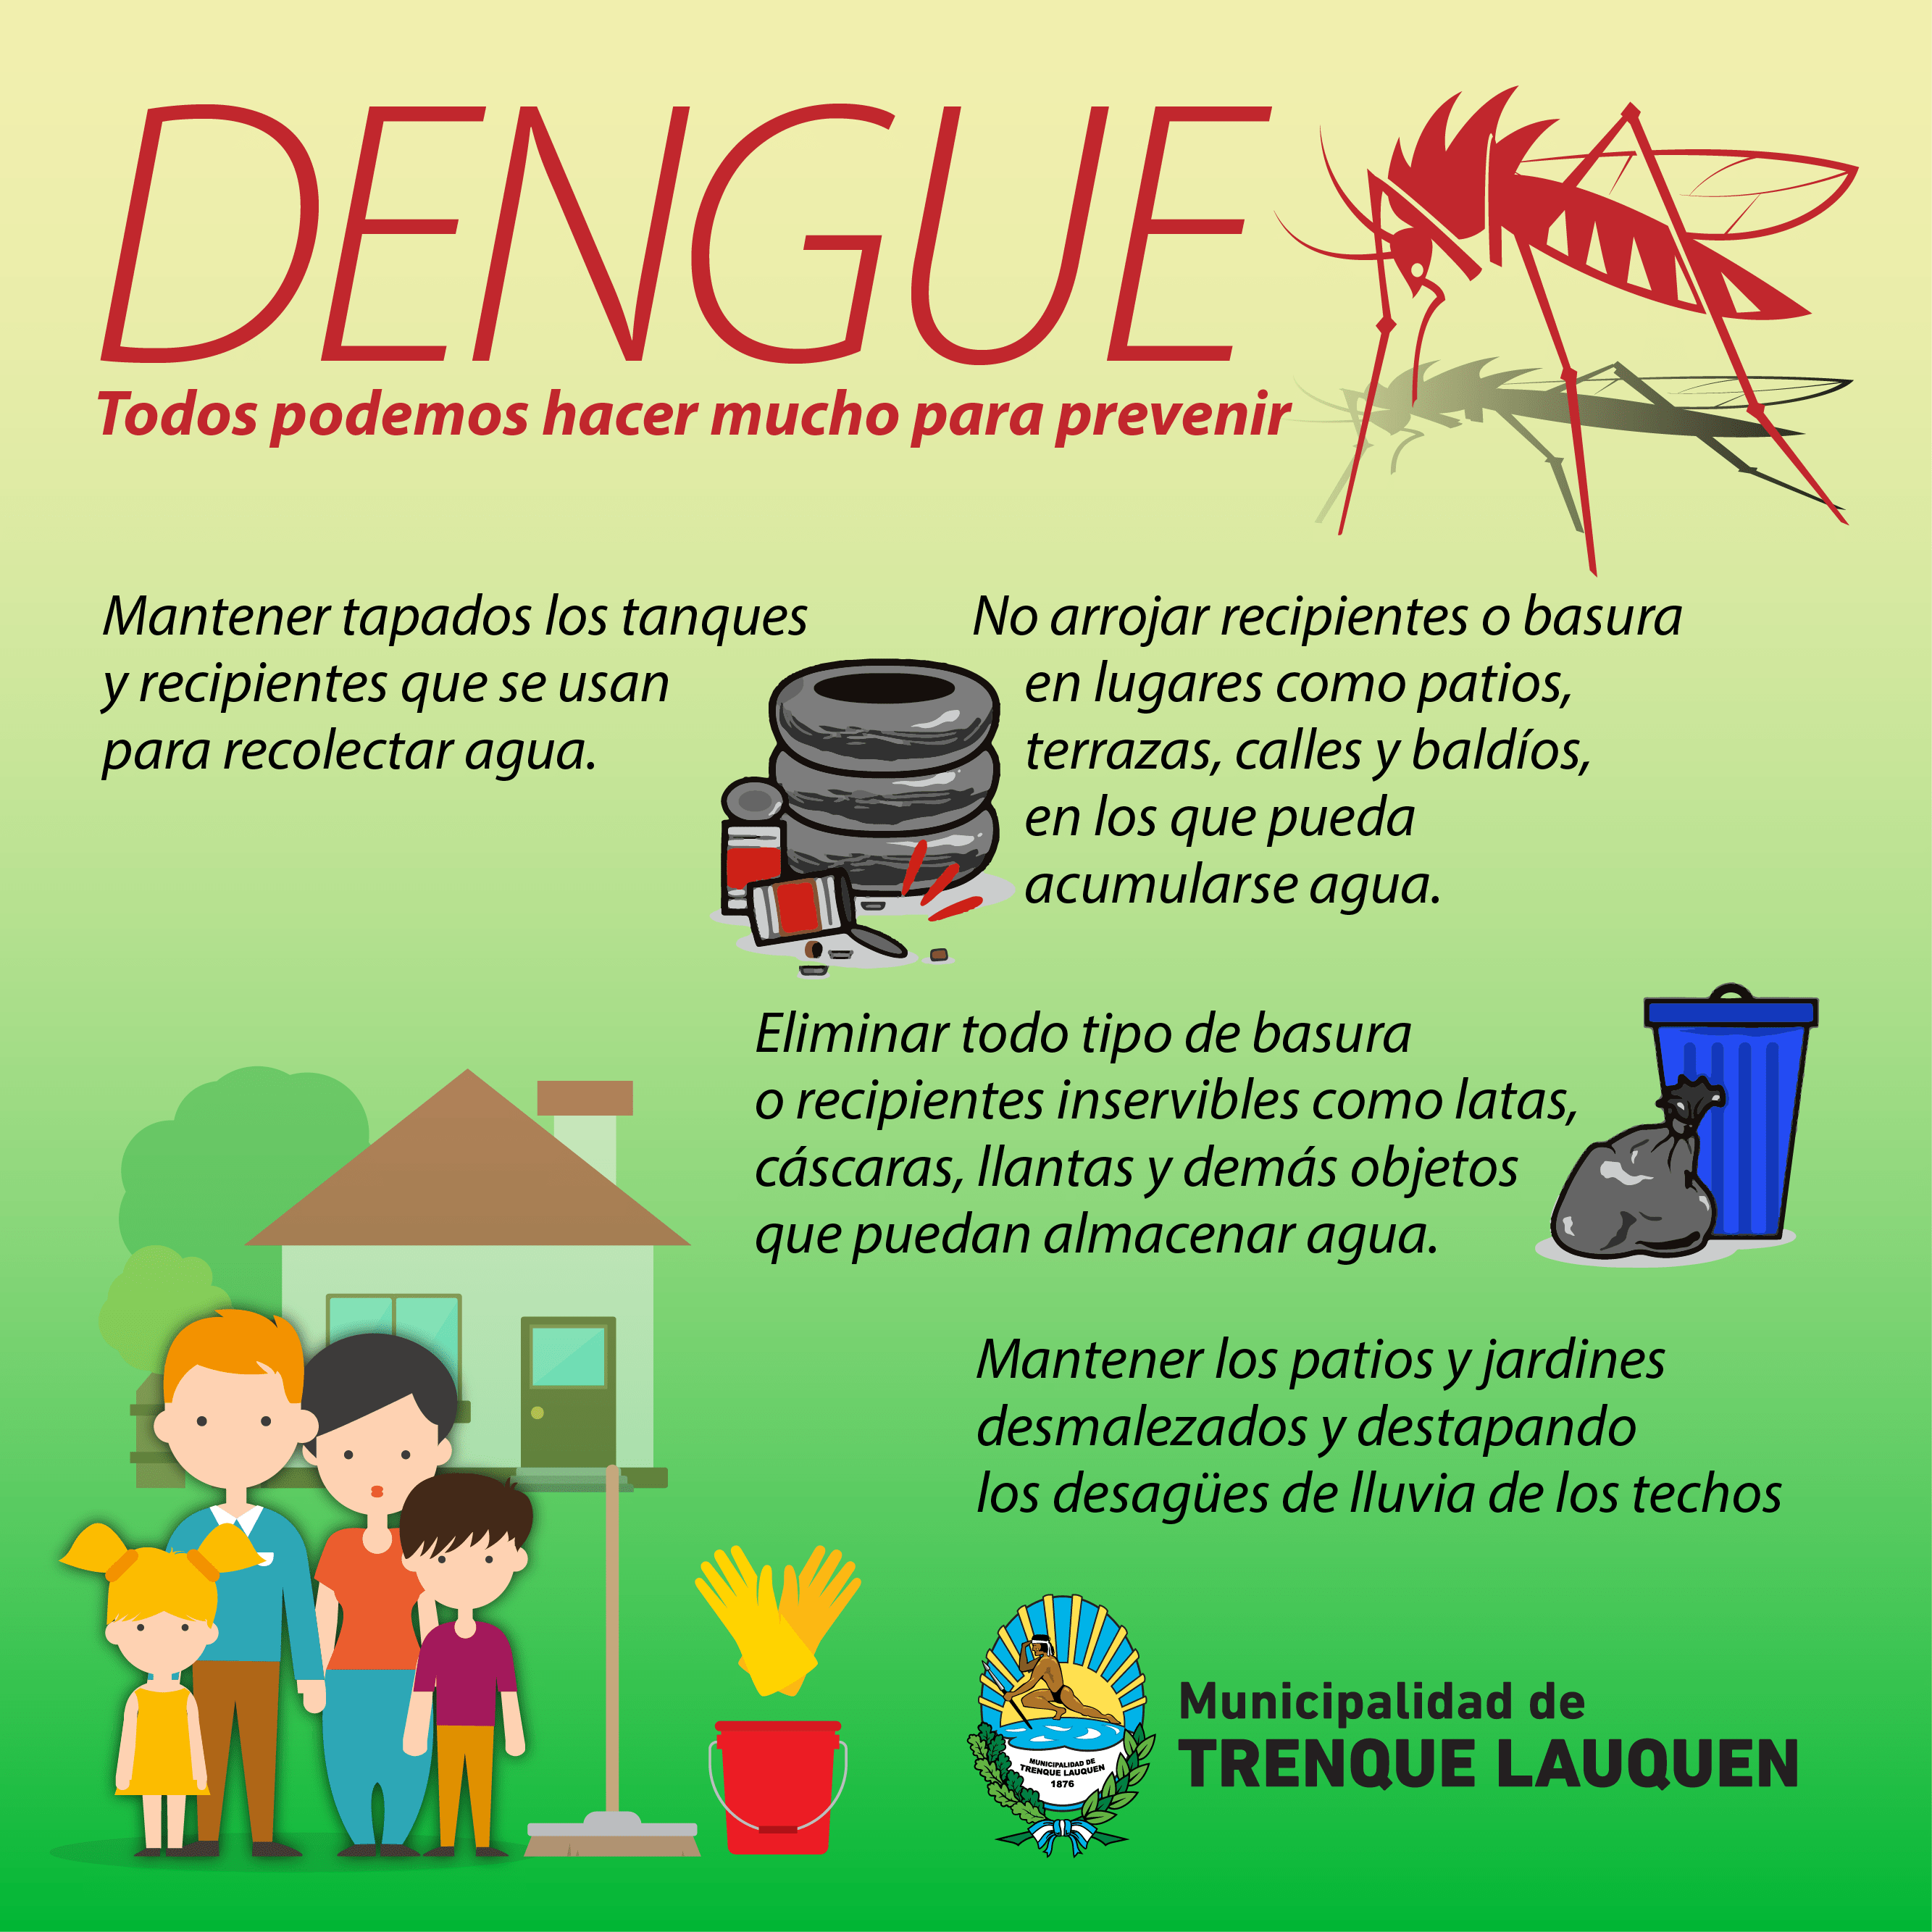 Questo è l'Inizio della Fine - Pagina 5 Dengue-03